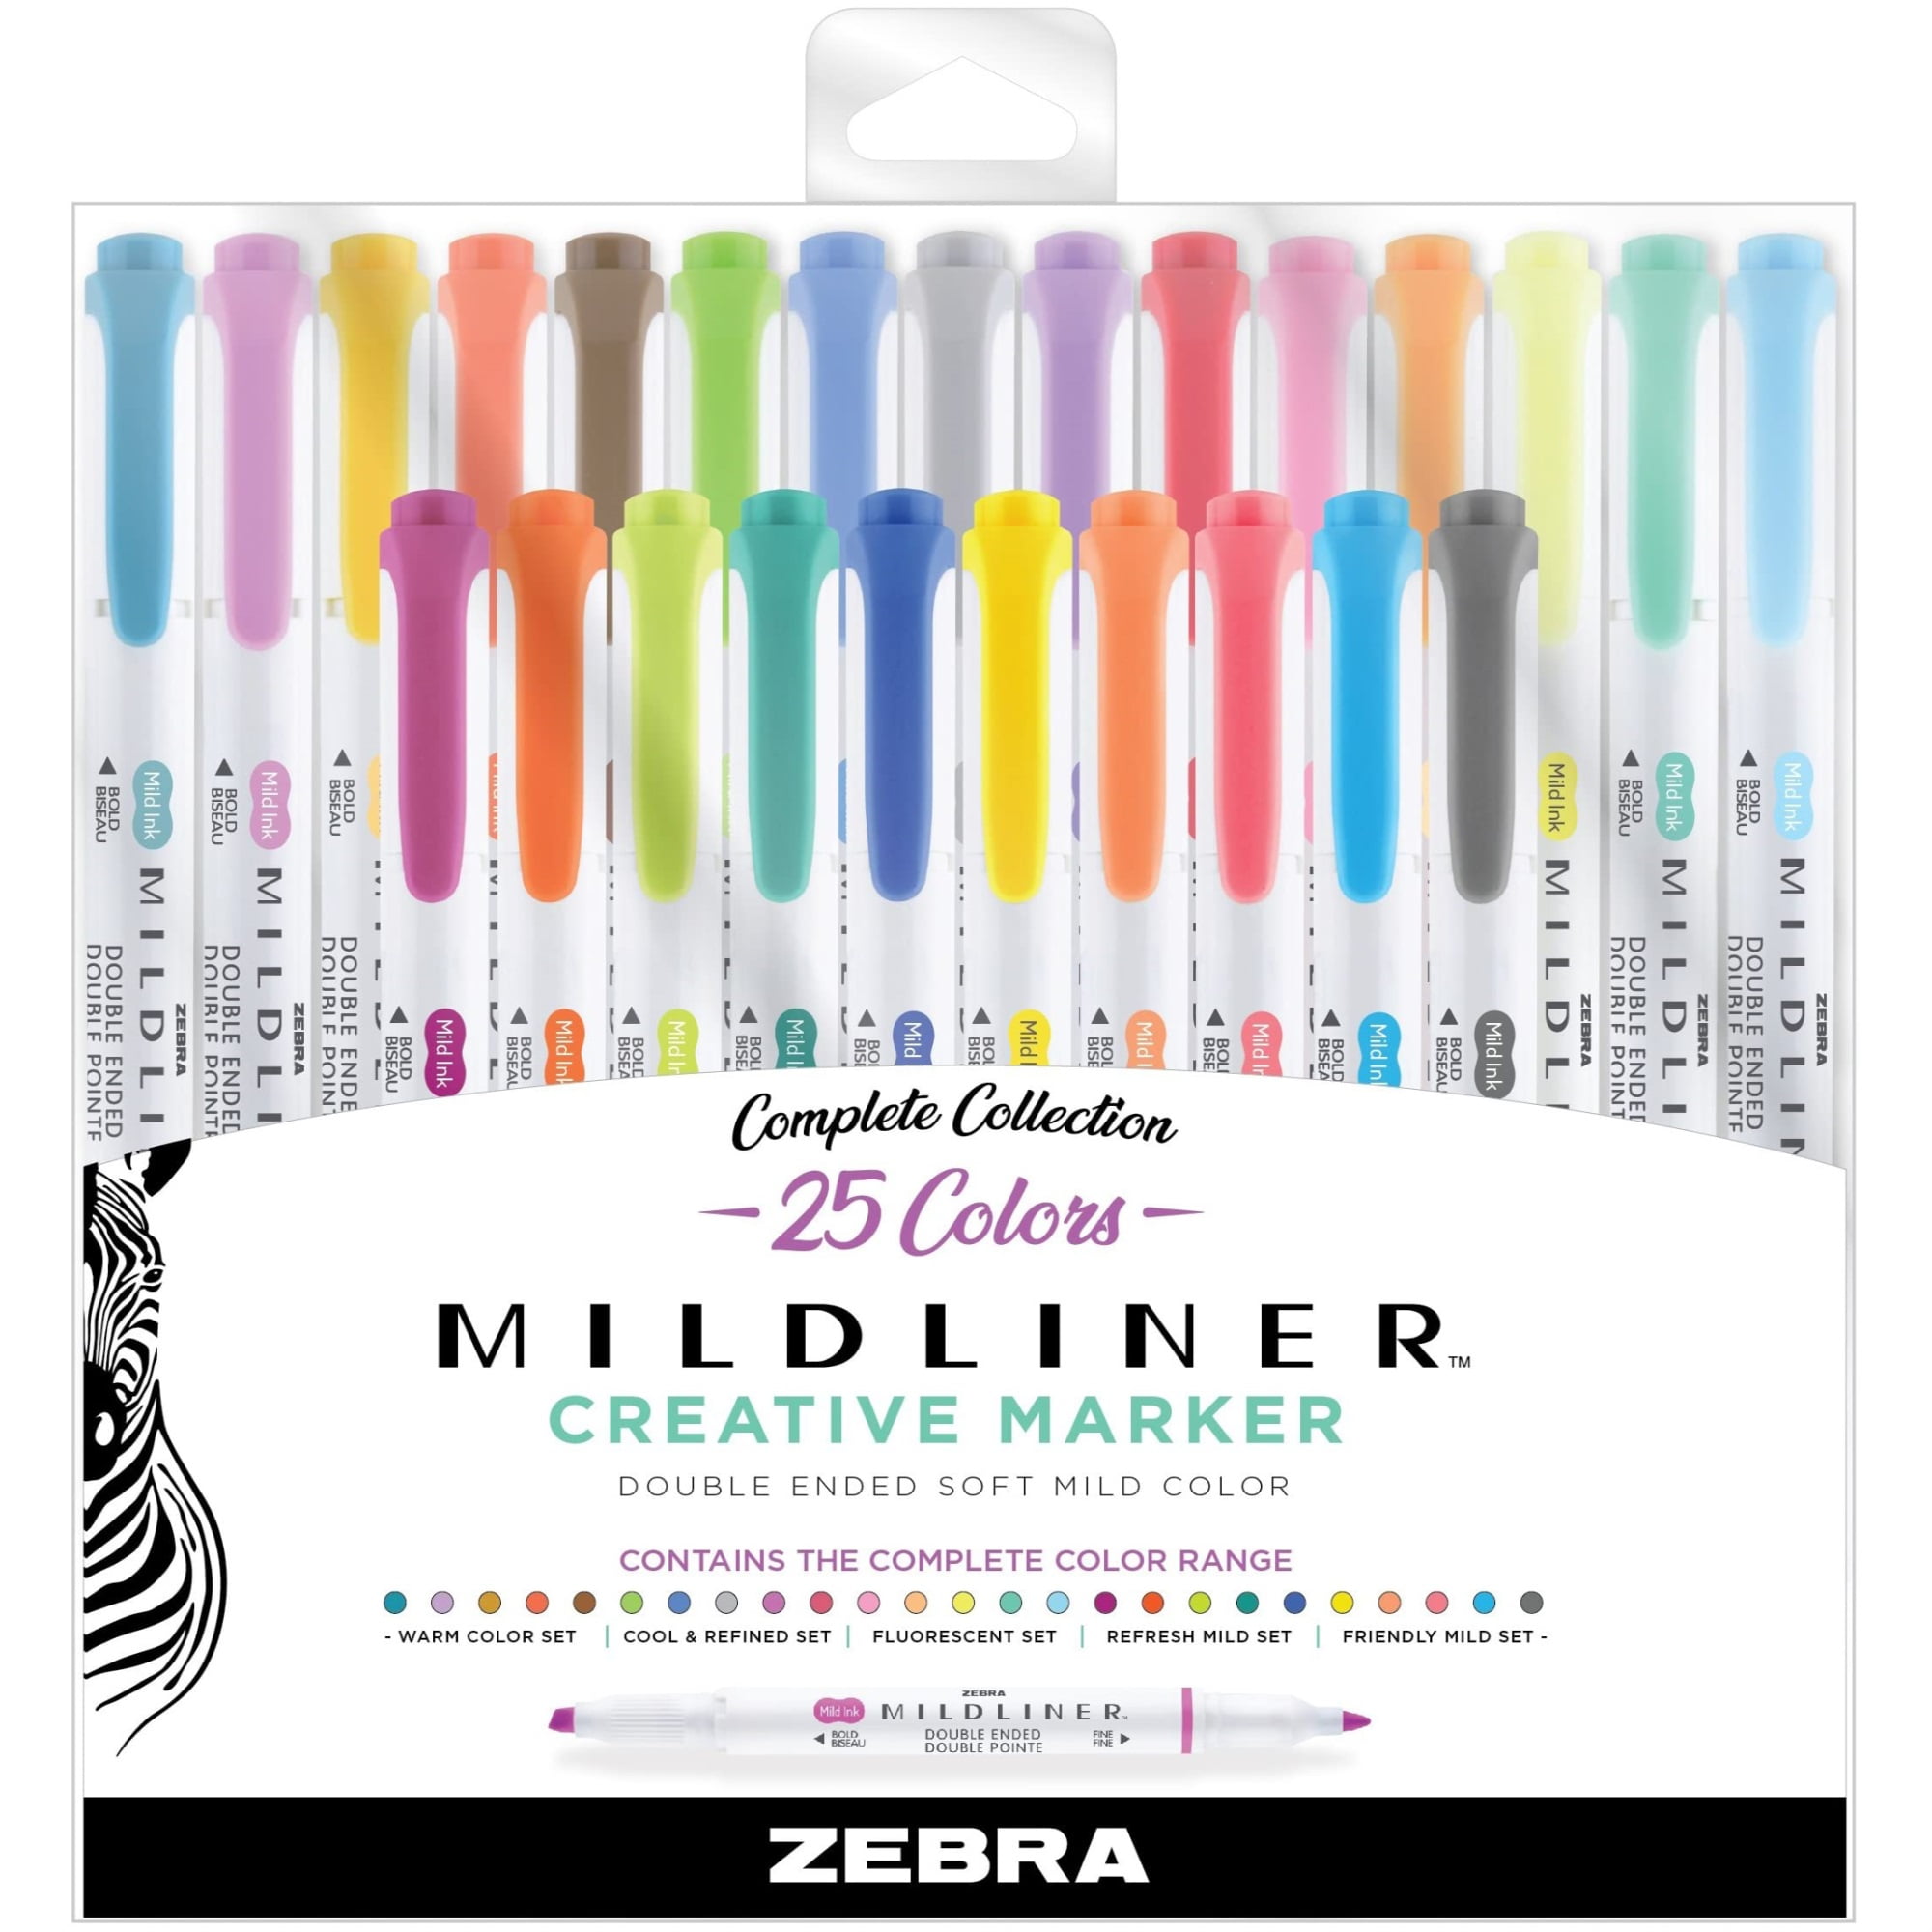 Zebra Mildliner Double Ended Highlighter Set 10 Colors